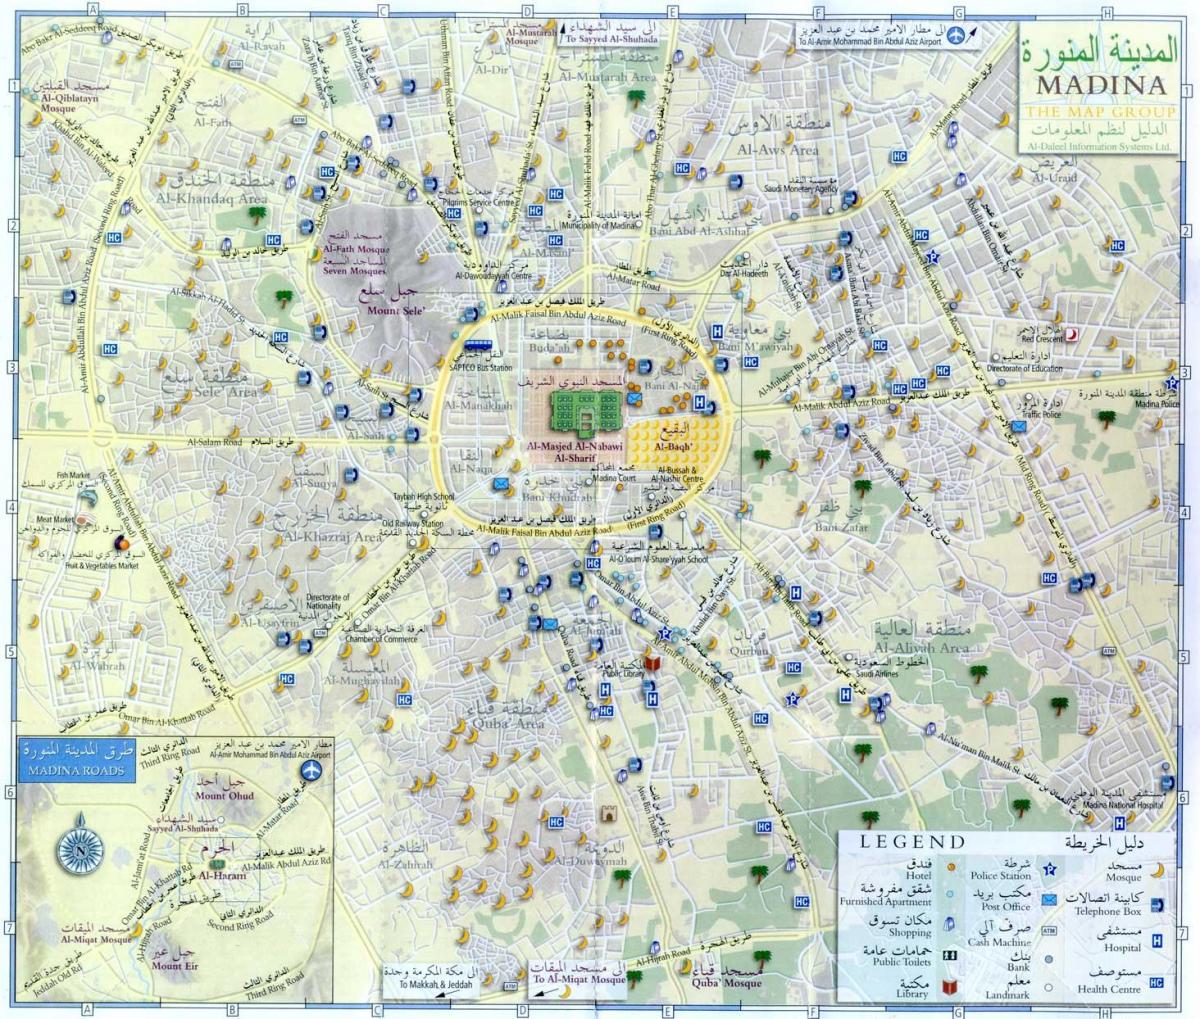 Mapa turístico de La Meca (Makkah)